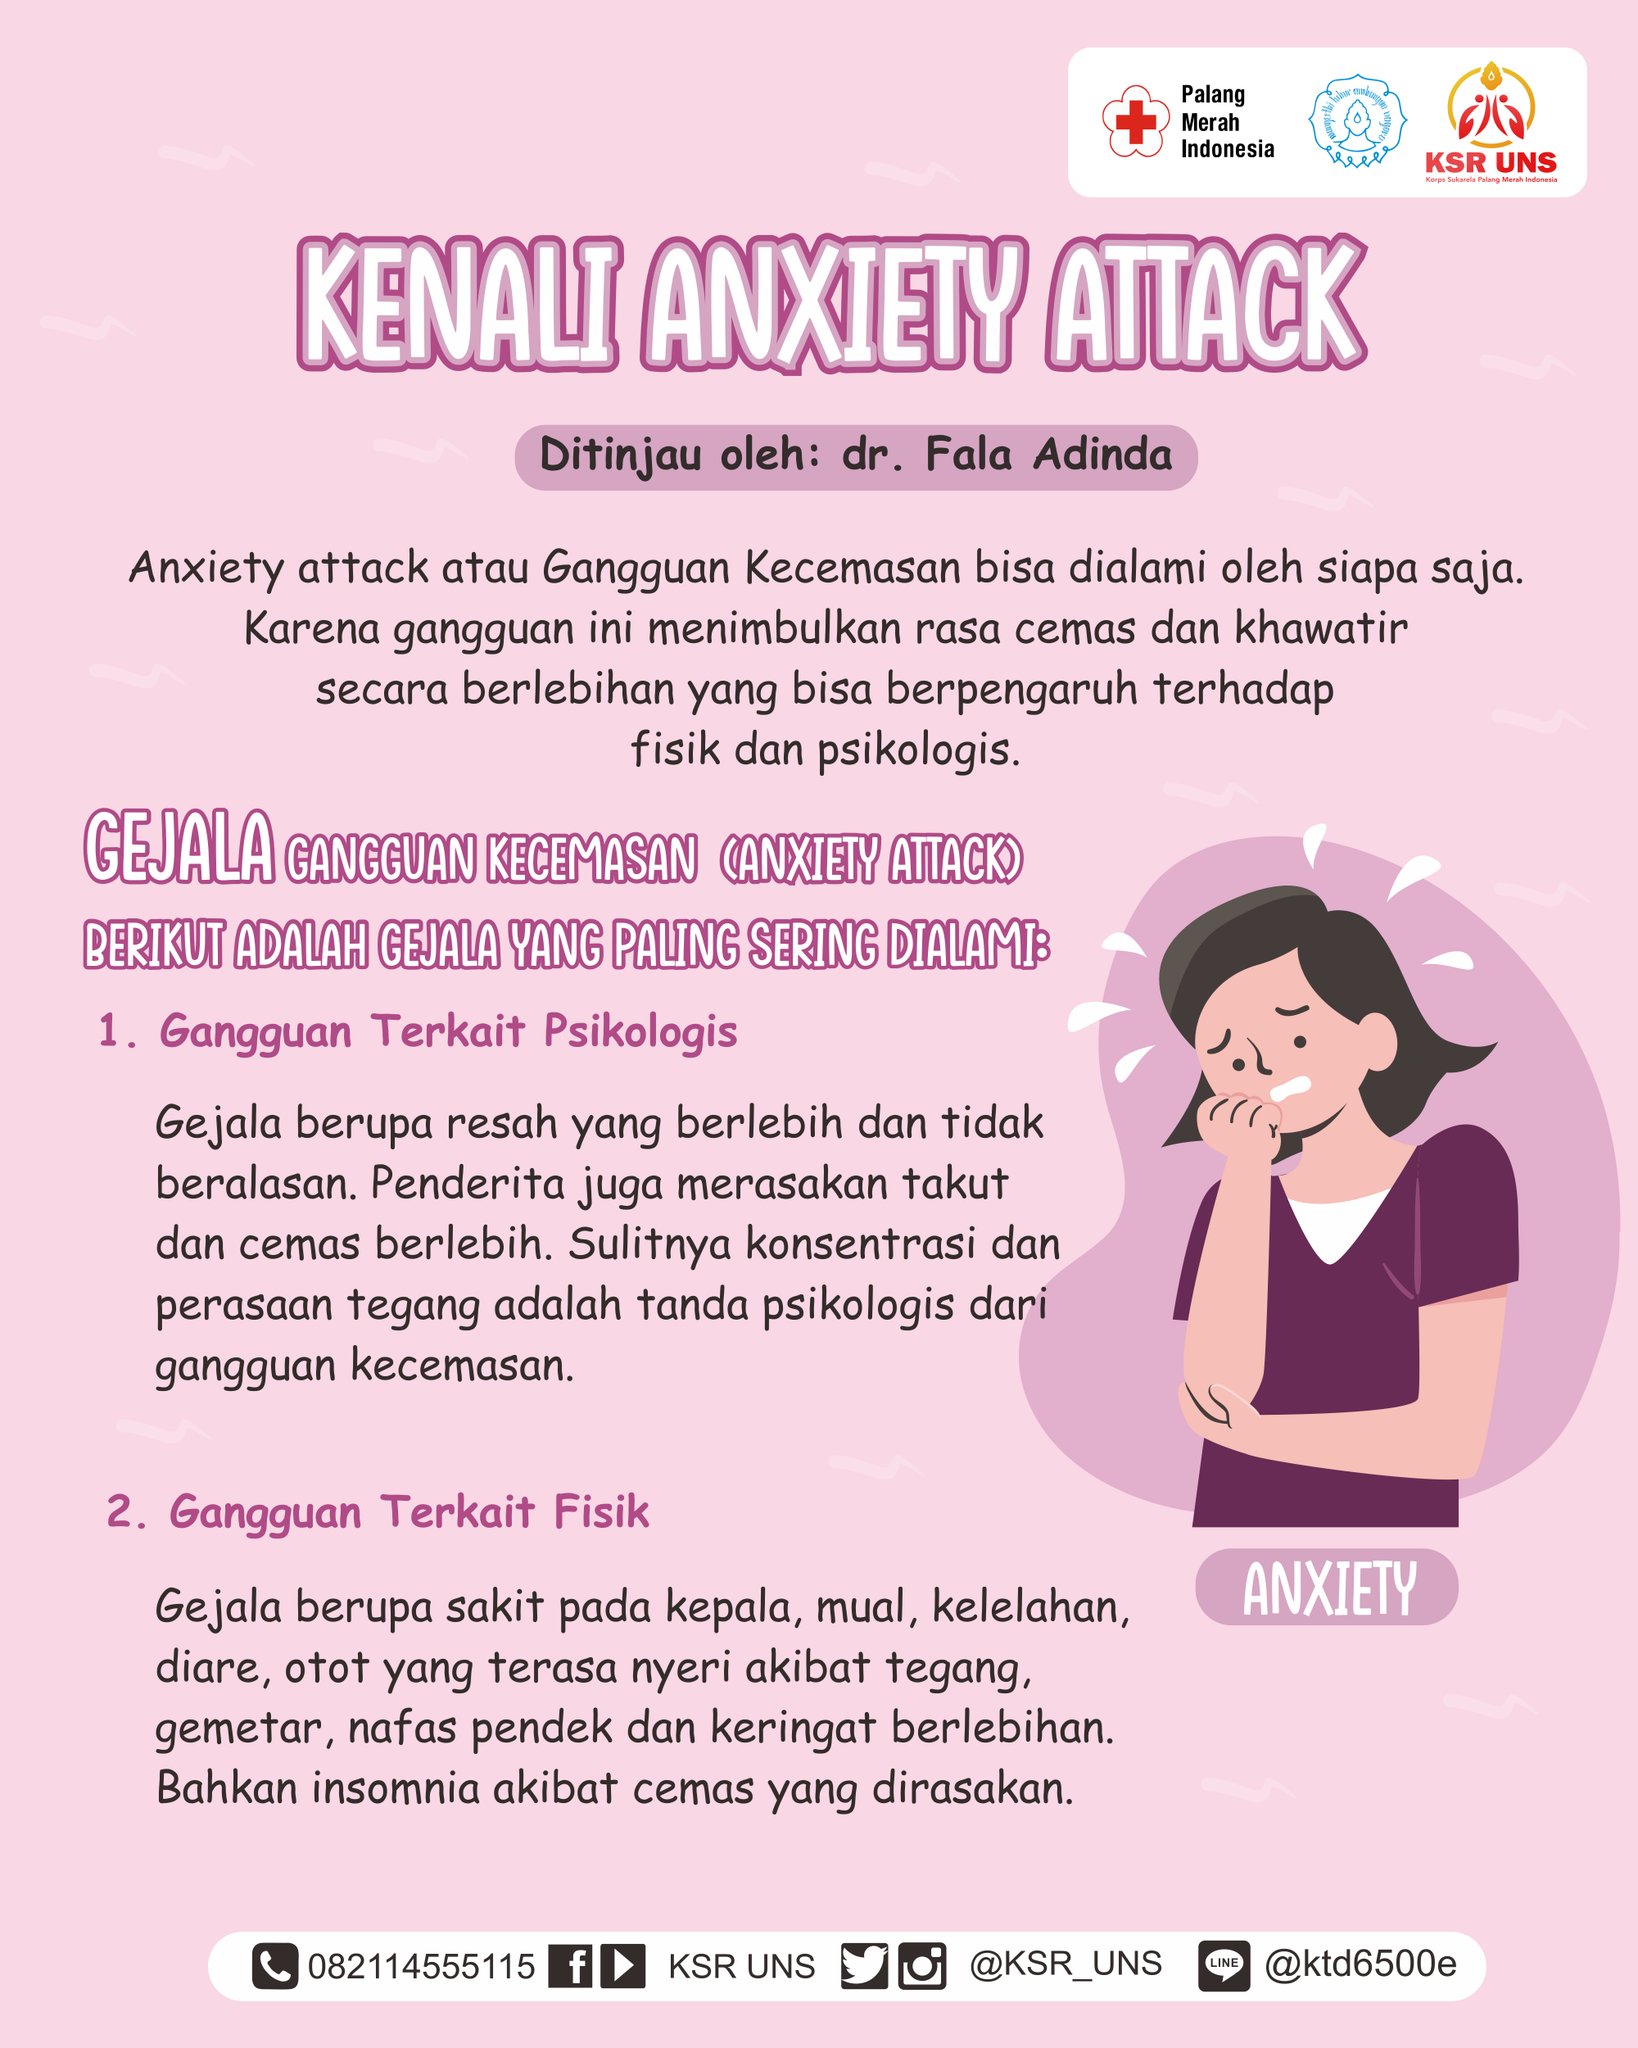 Tanda anxiety attack